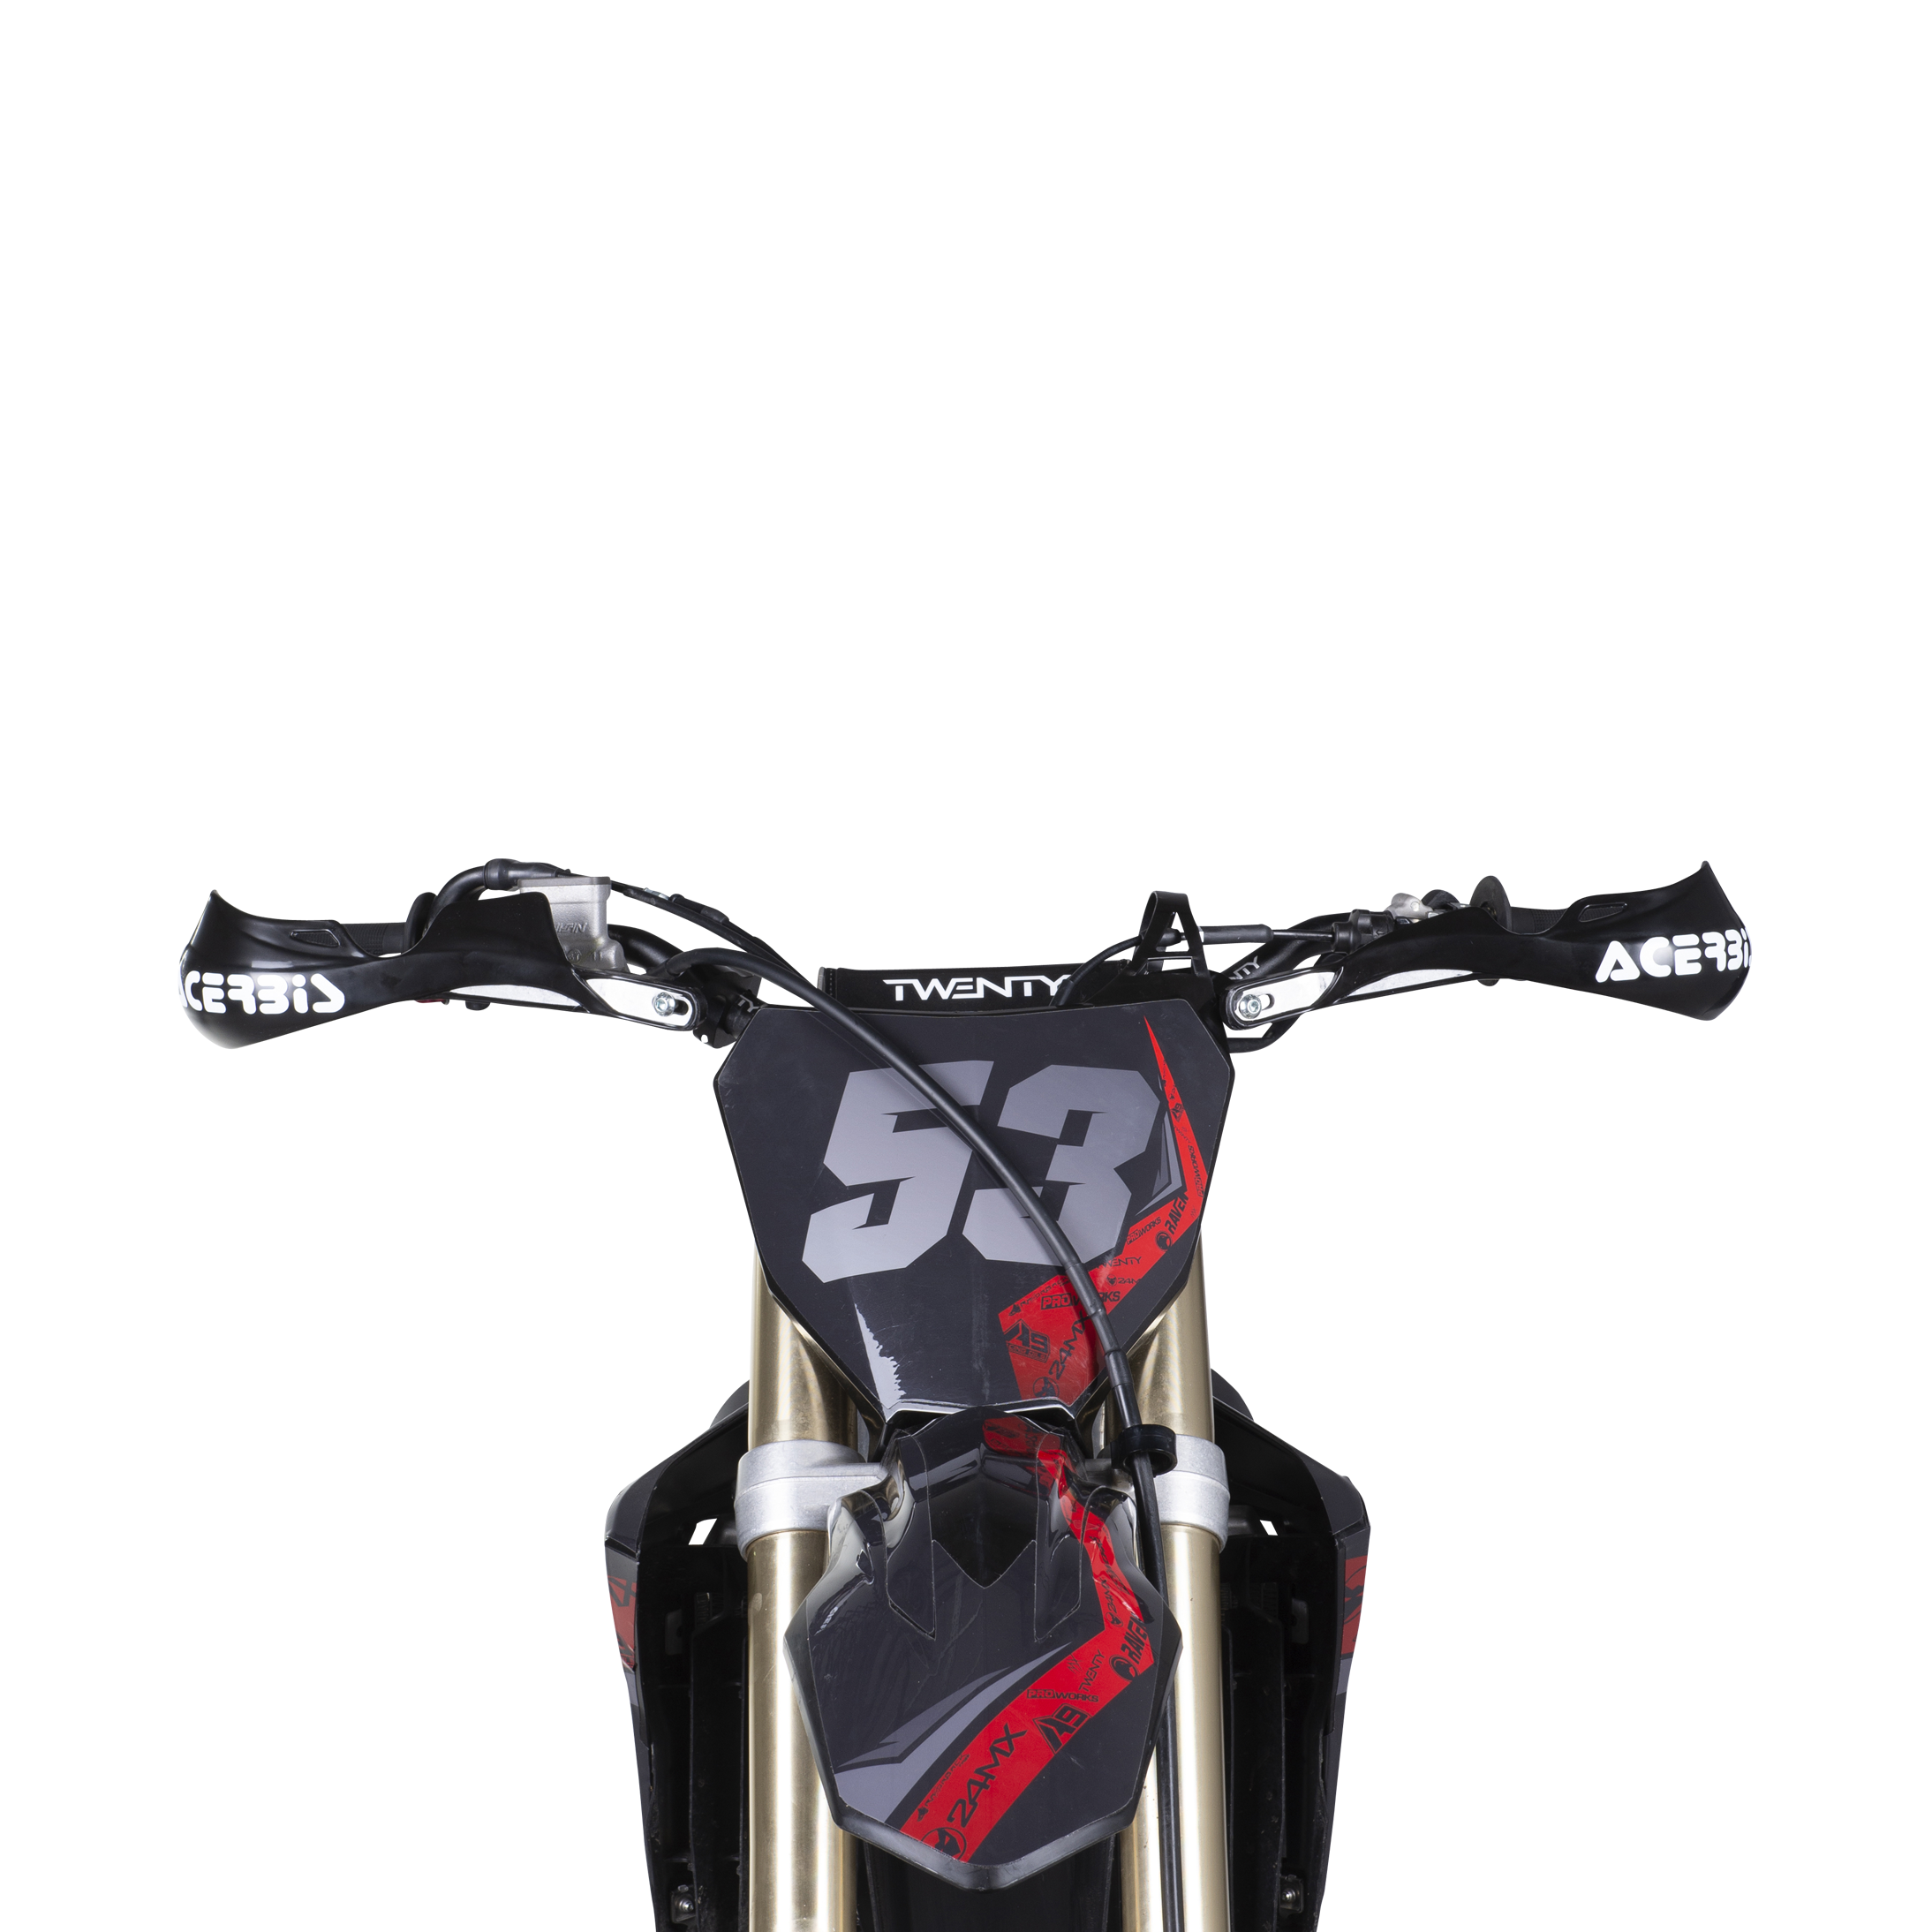 GOOFIT reemplazo paramanos Moto Enduro 22mm Universal Aluminio Acerbis  Motocross Protecciones reemplazo reemplazo para Pit Bike ATV Quad Scooter